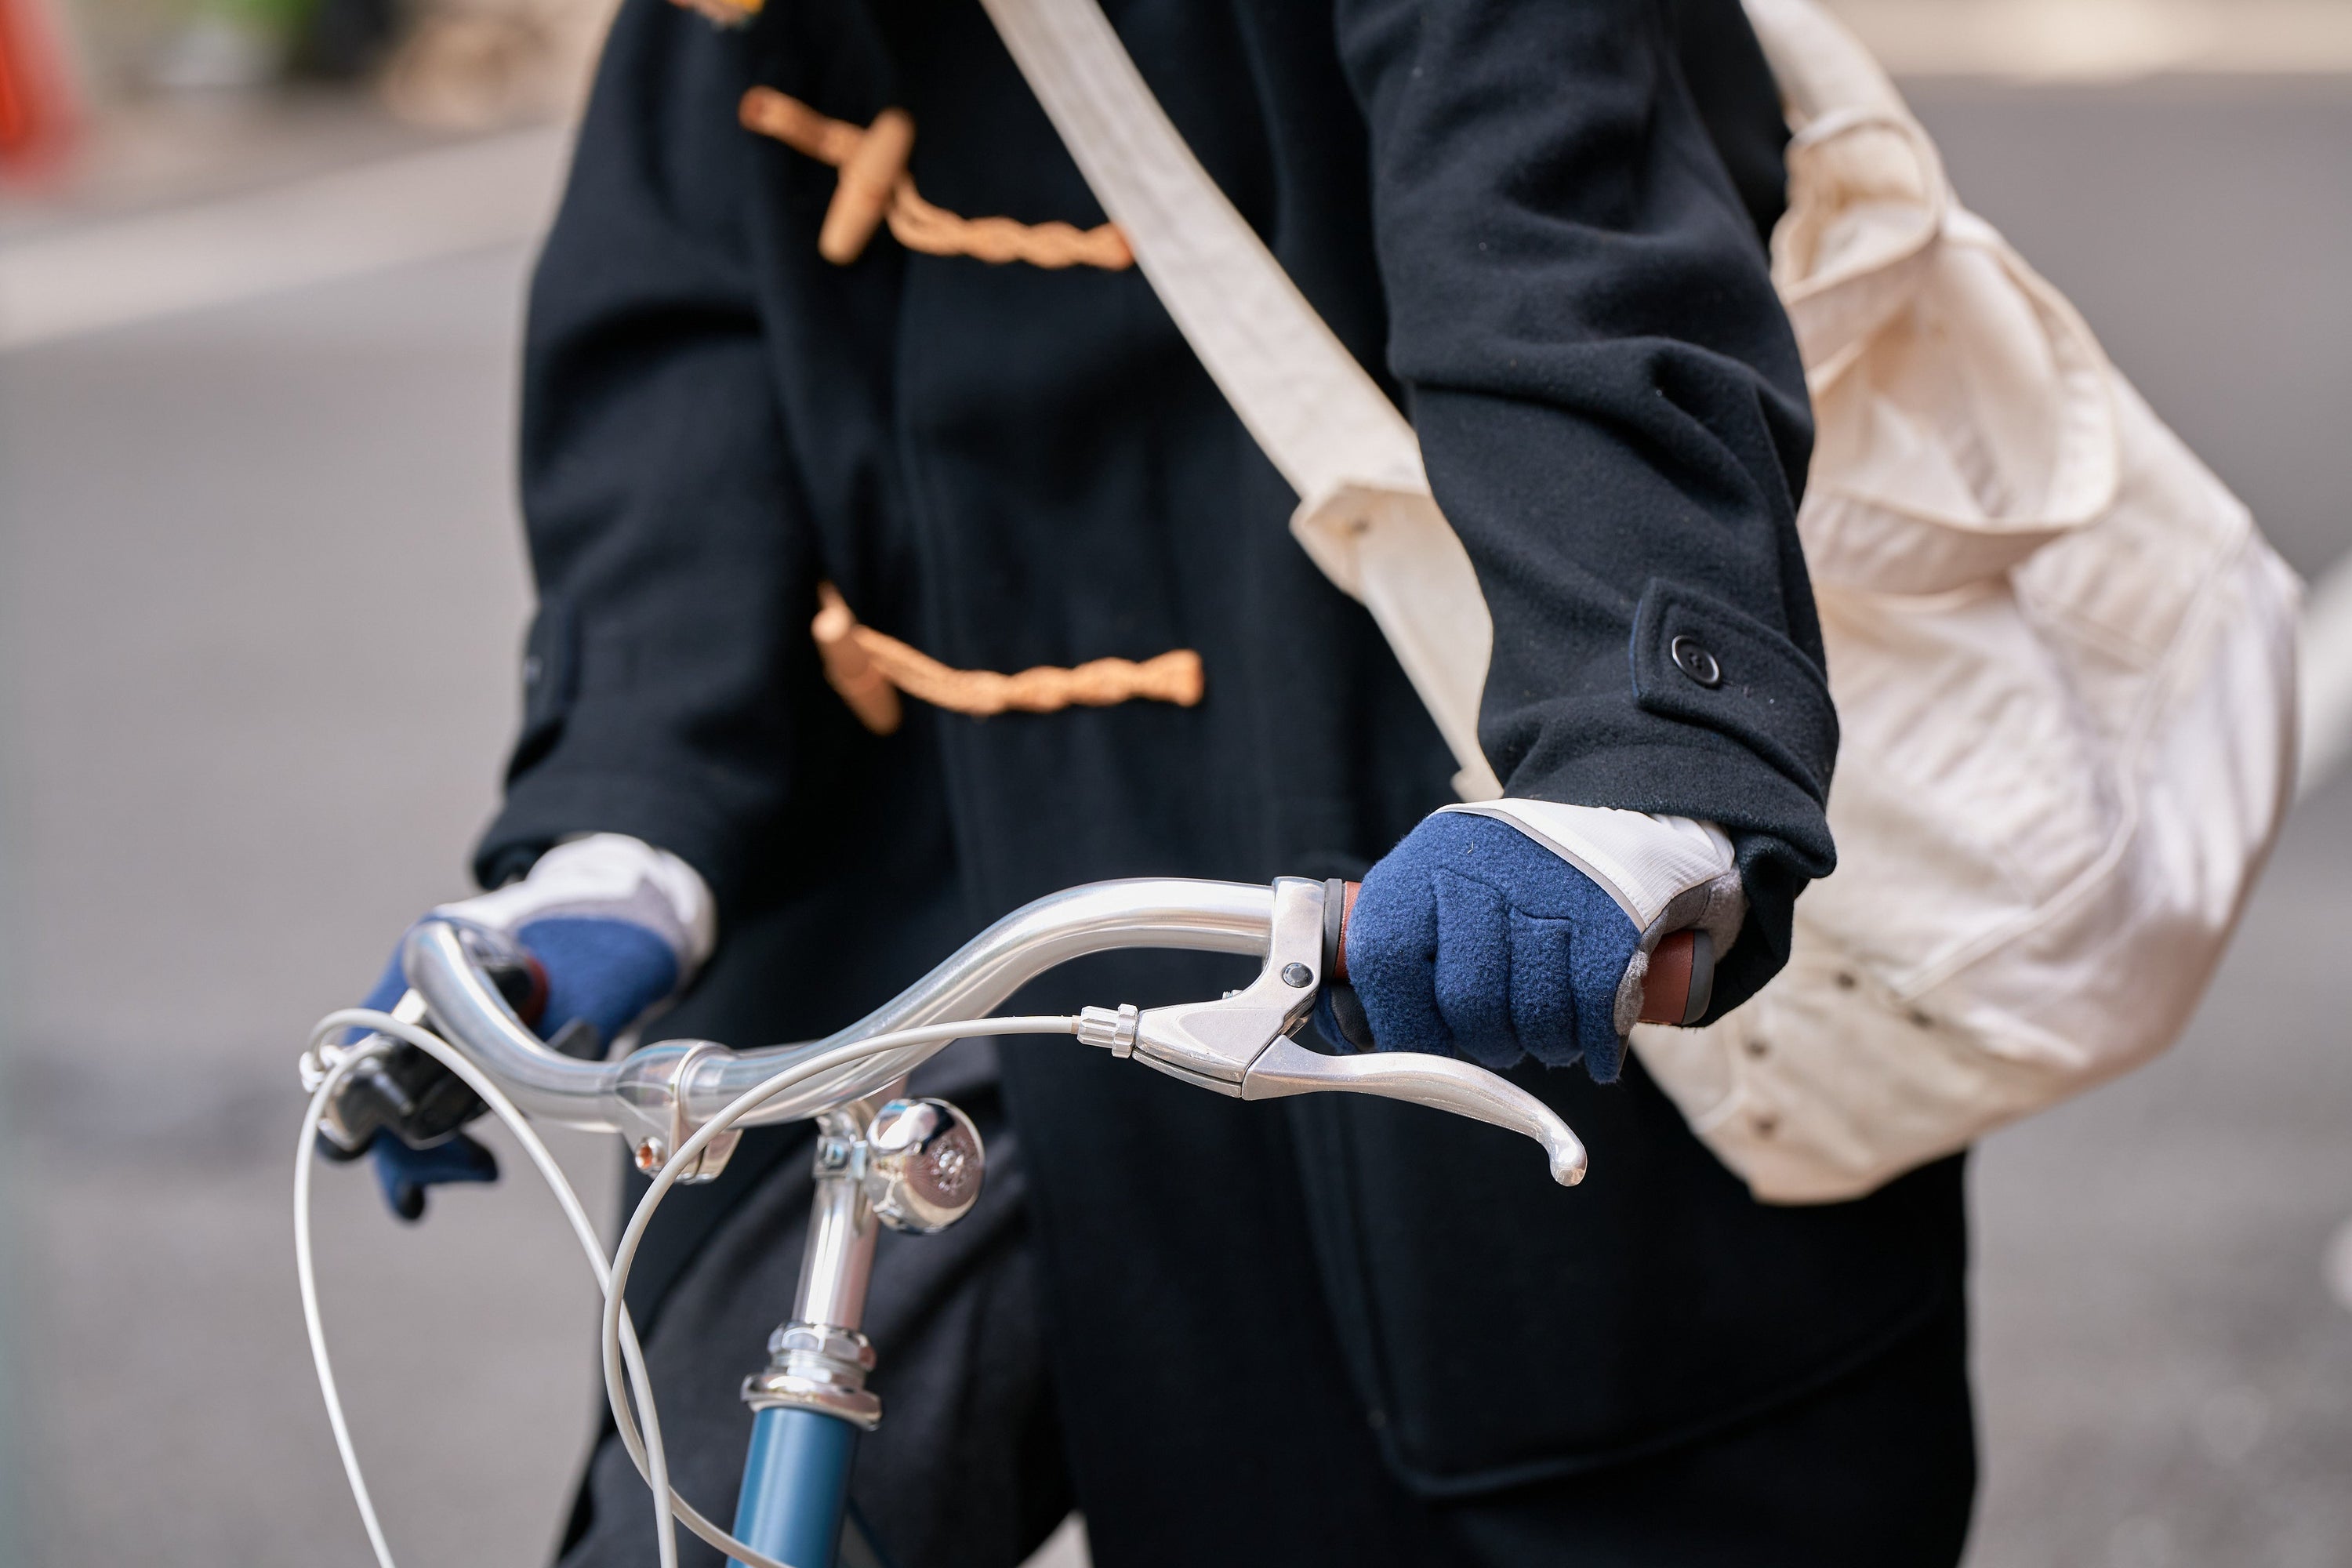 tokyobike + tet. commuter gloves MEDIUM navy & white